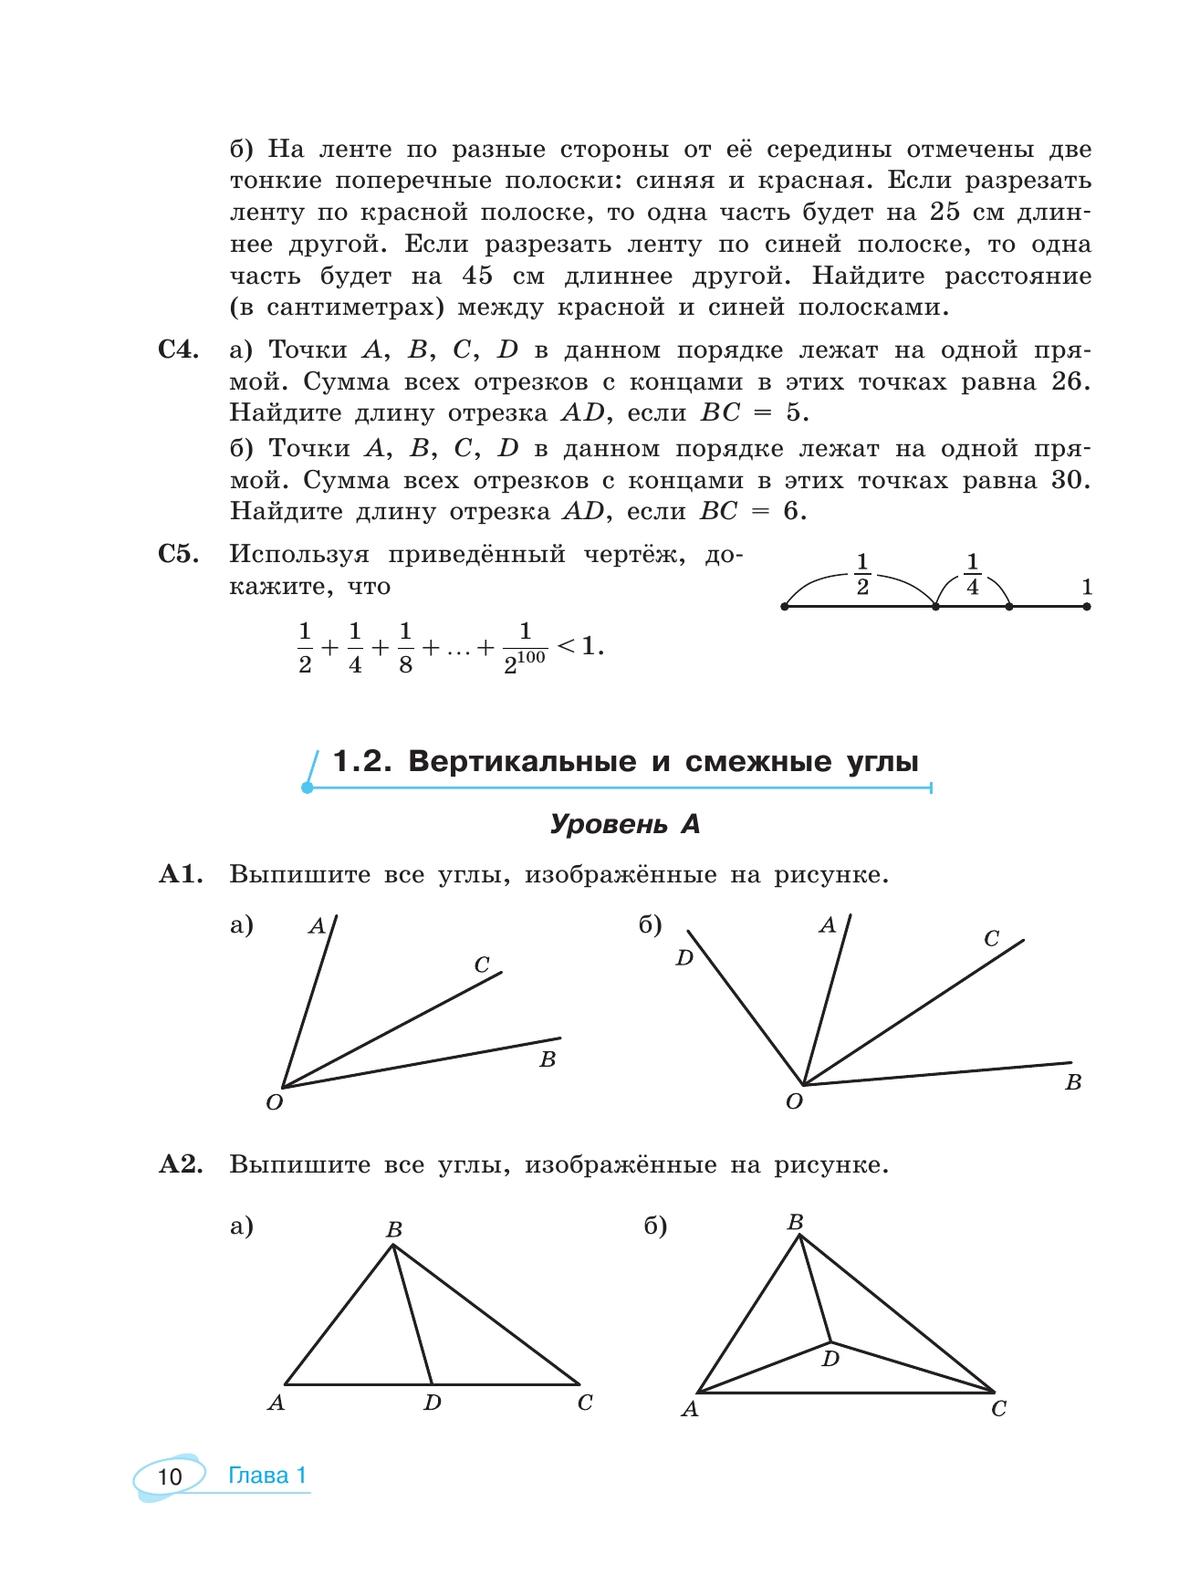 Математика. Универсальный многоуровневый сборник задач. 7-9 класс. В 3 частях. Ч.2. Геометрия 11